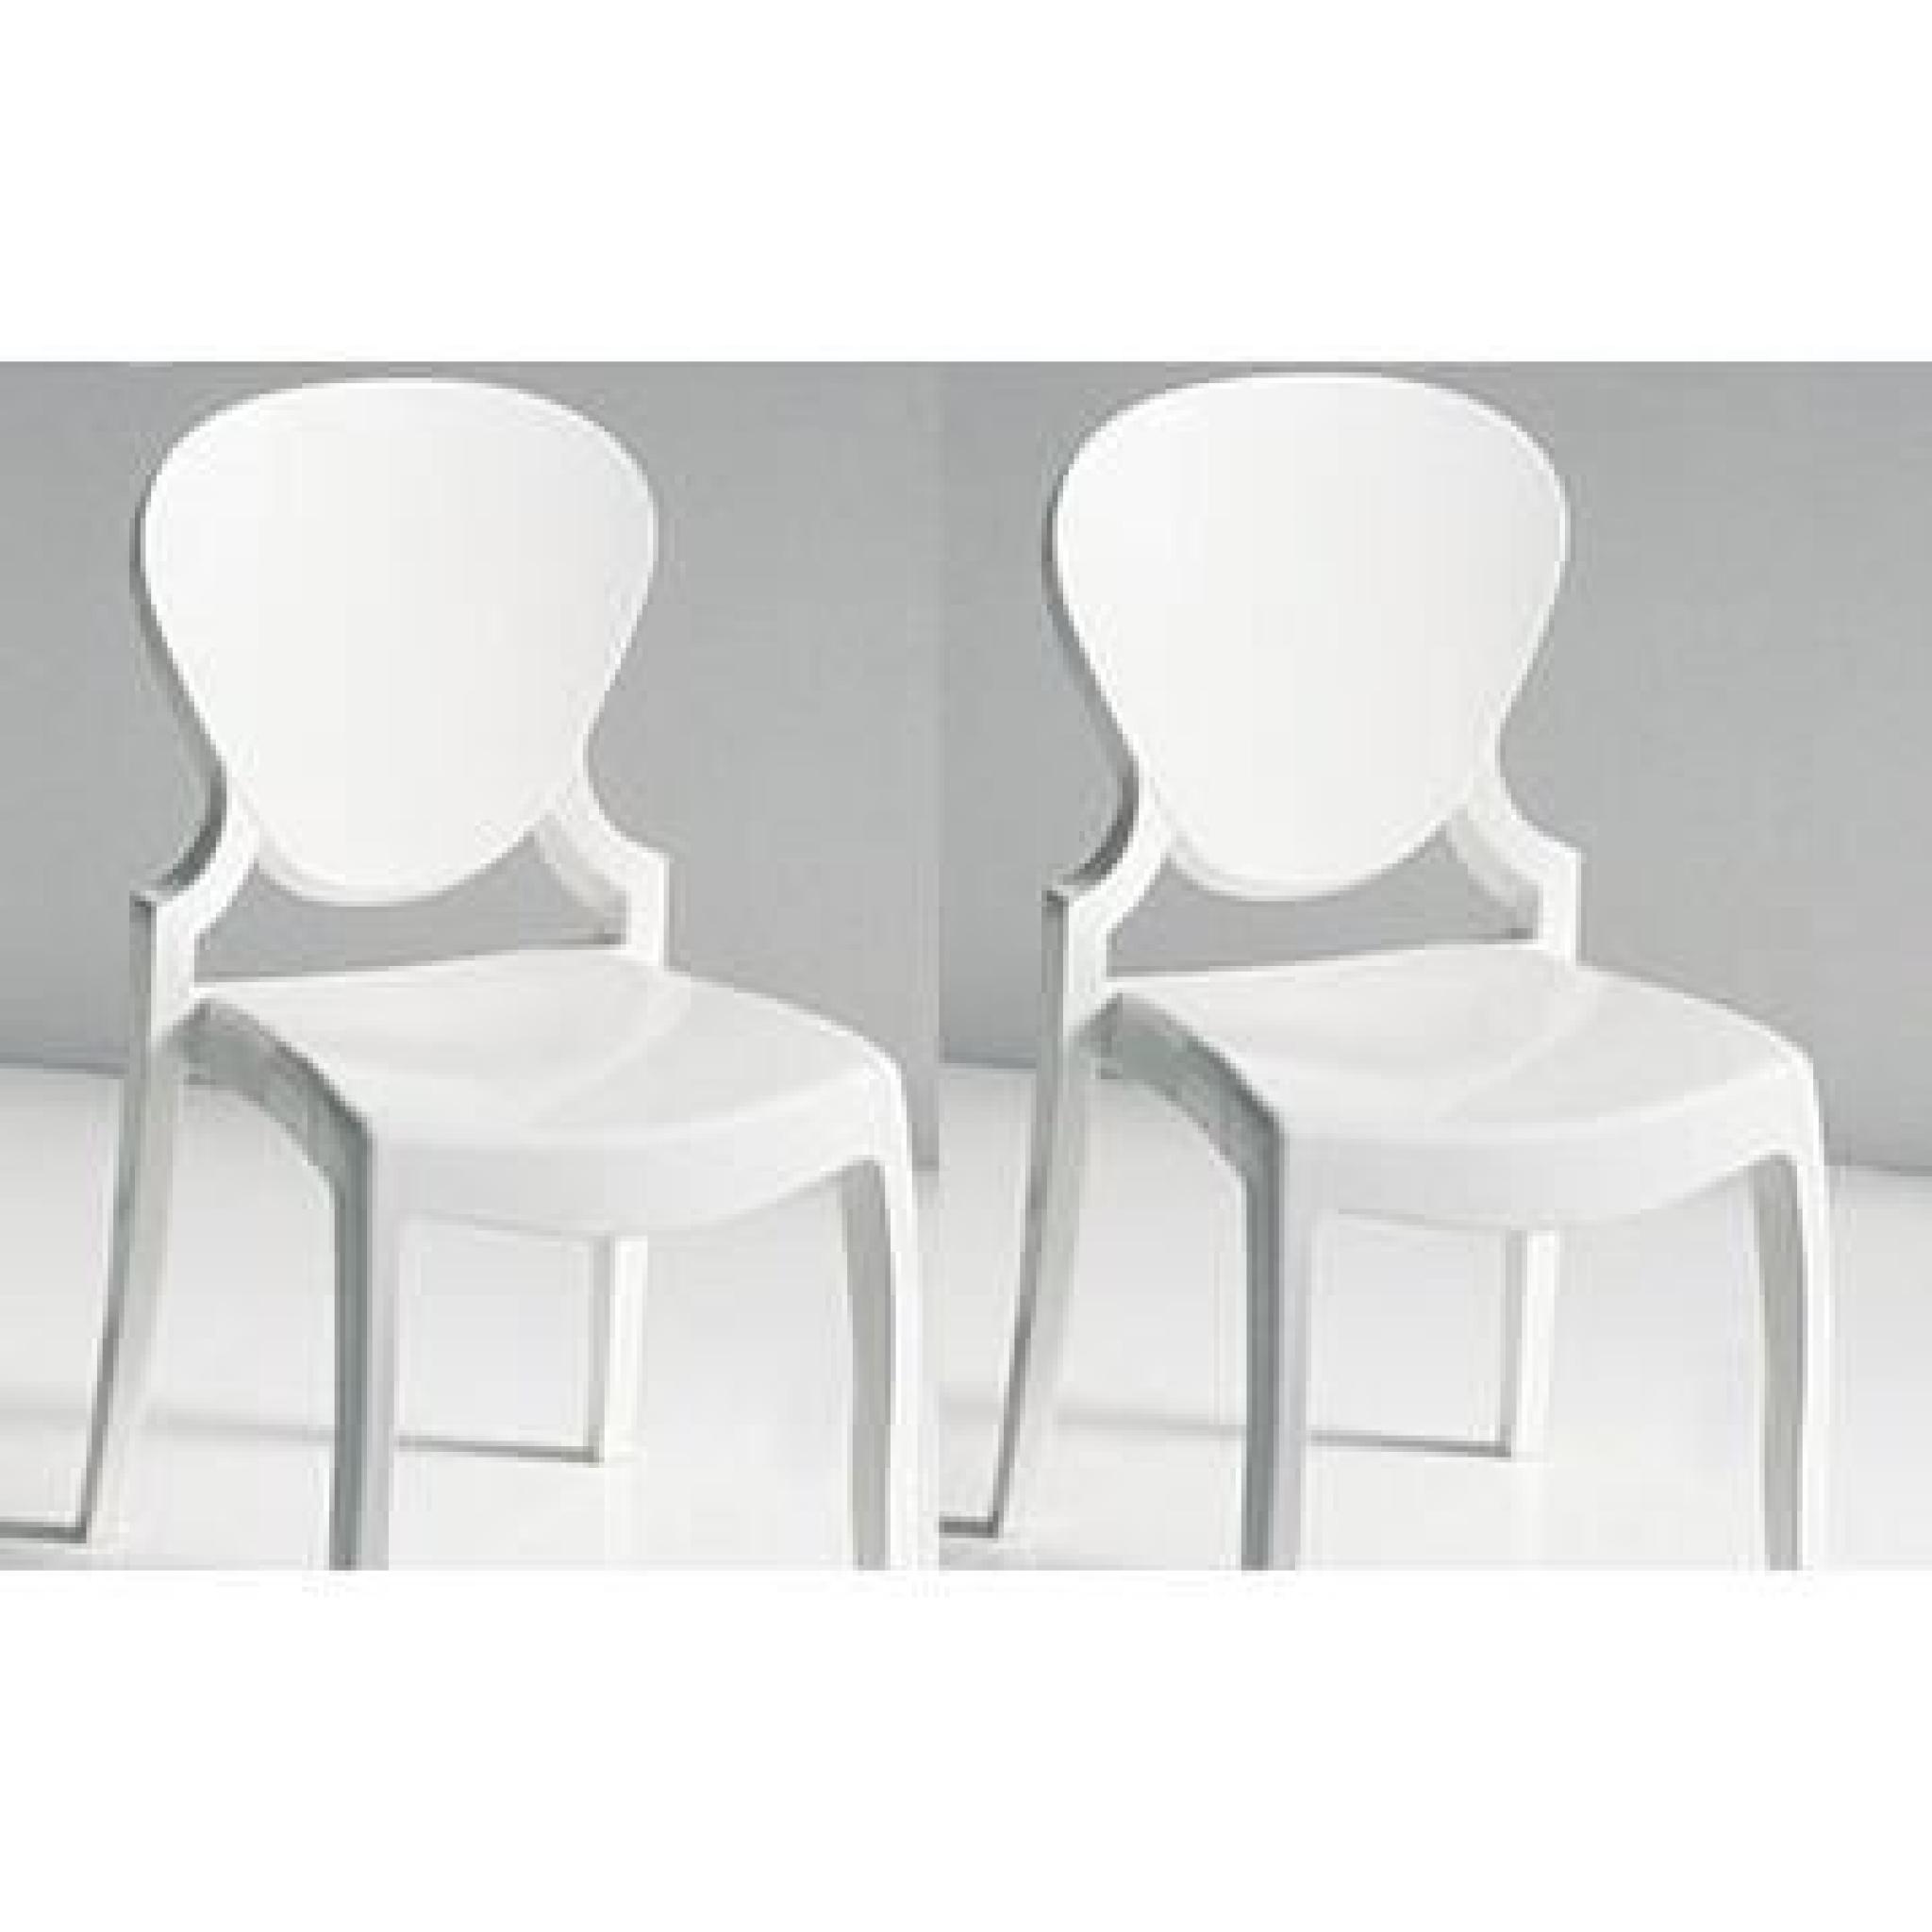 La chaise LIGHT adopte un design sobre et épuré qui lui donne un côté futuriste très tendance. Le dossier arrondie ajoute une tou...